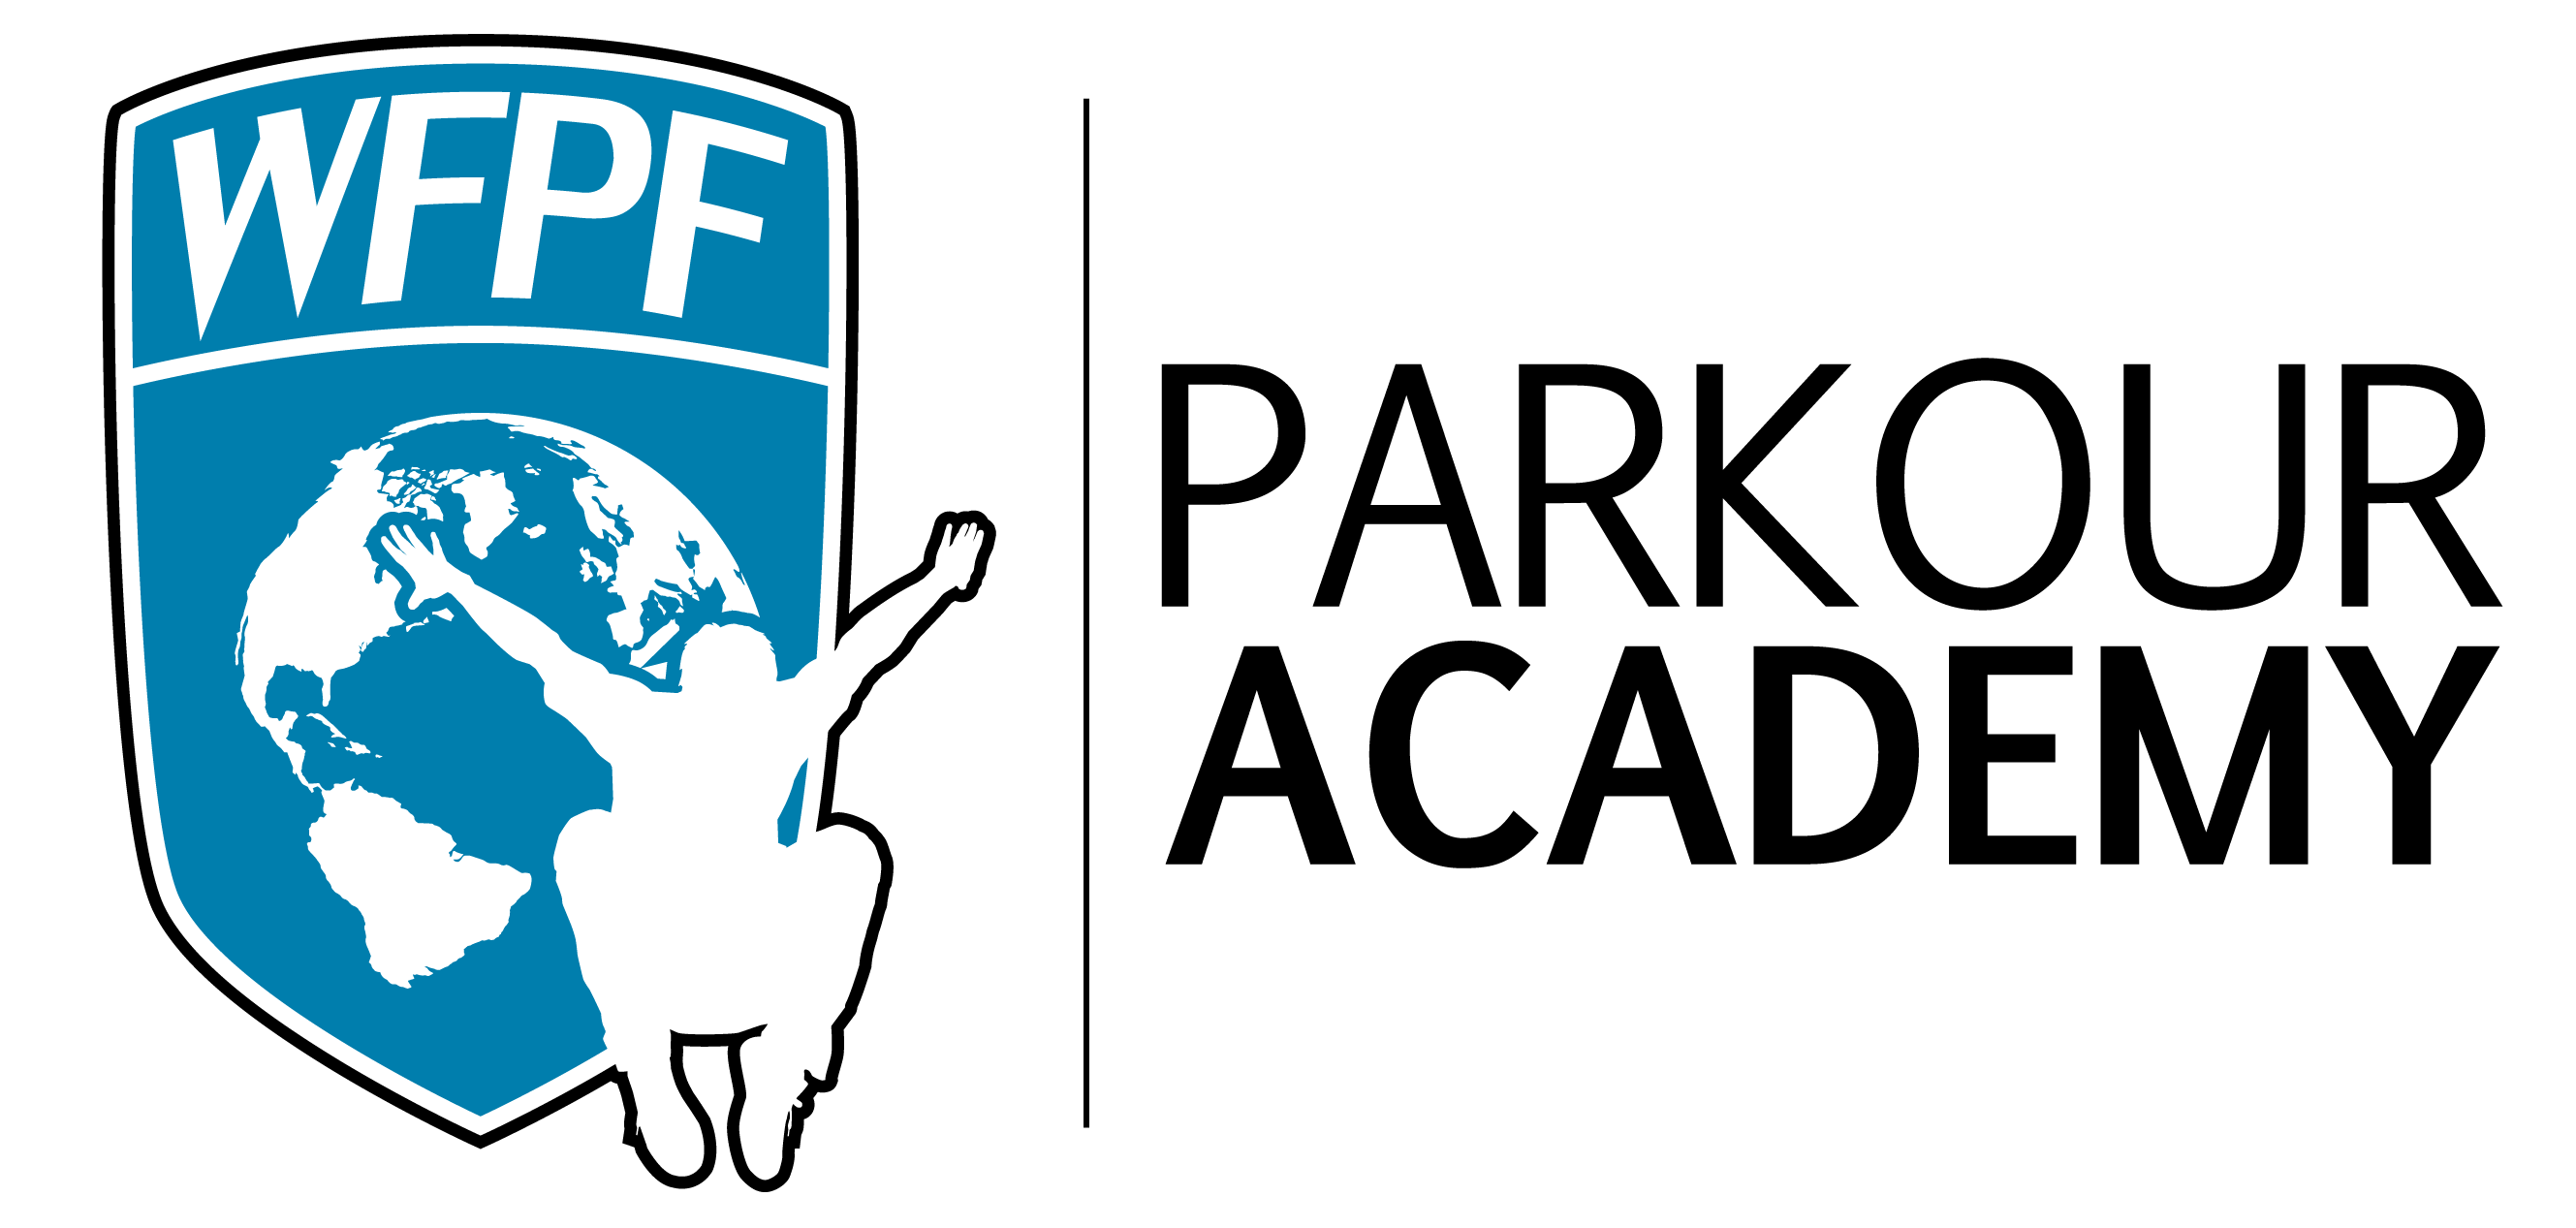 WFPF Parkour Academy Logo-01